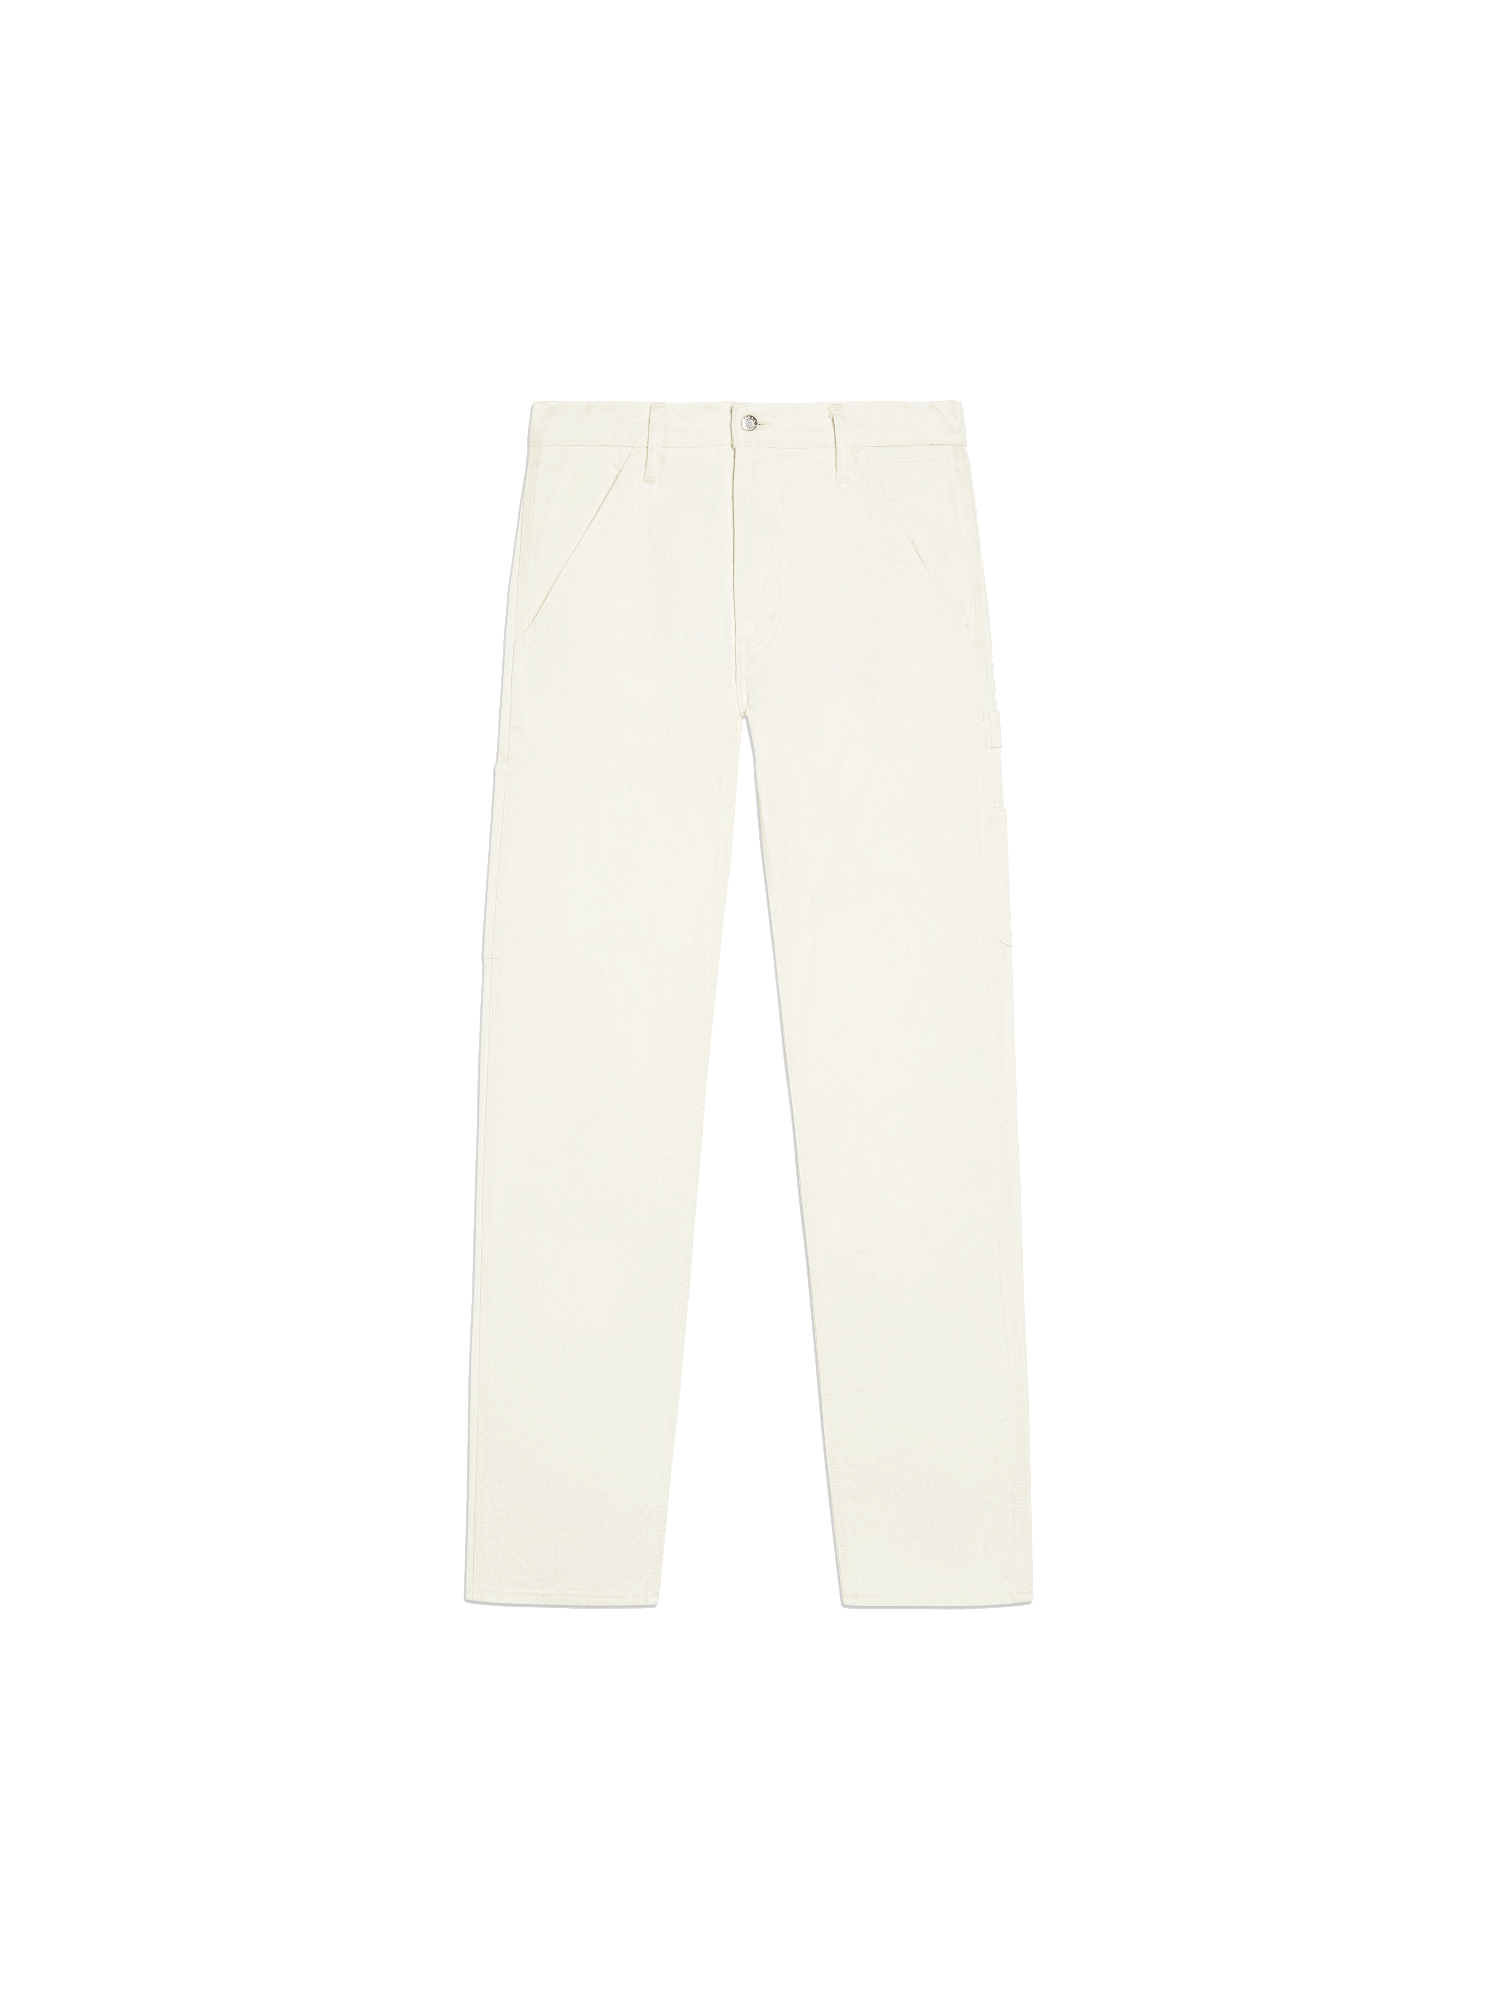 PANGAIA - Archive Hemp Denim Workwear Carpenter Jeans - ecru ivory WOMEN 26 MEN 28